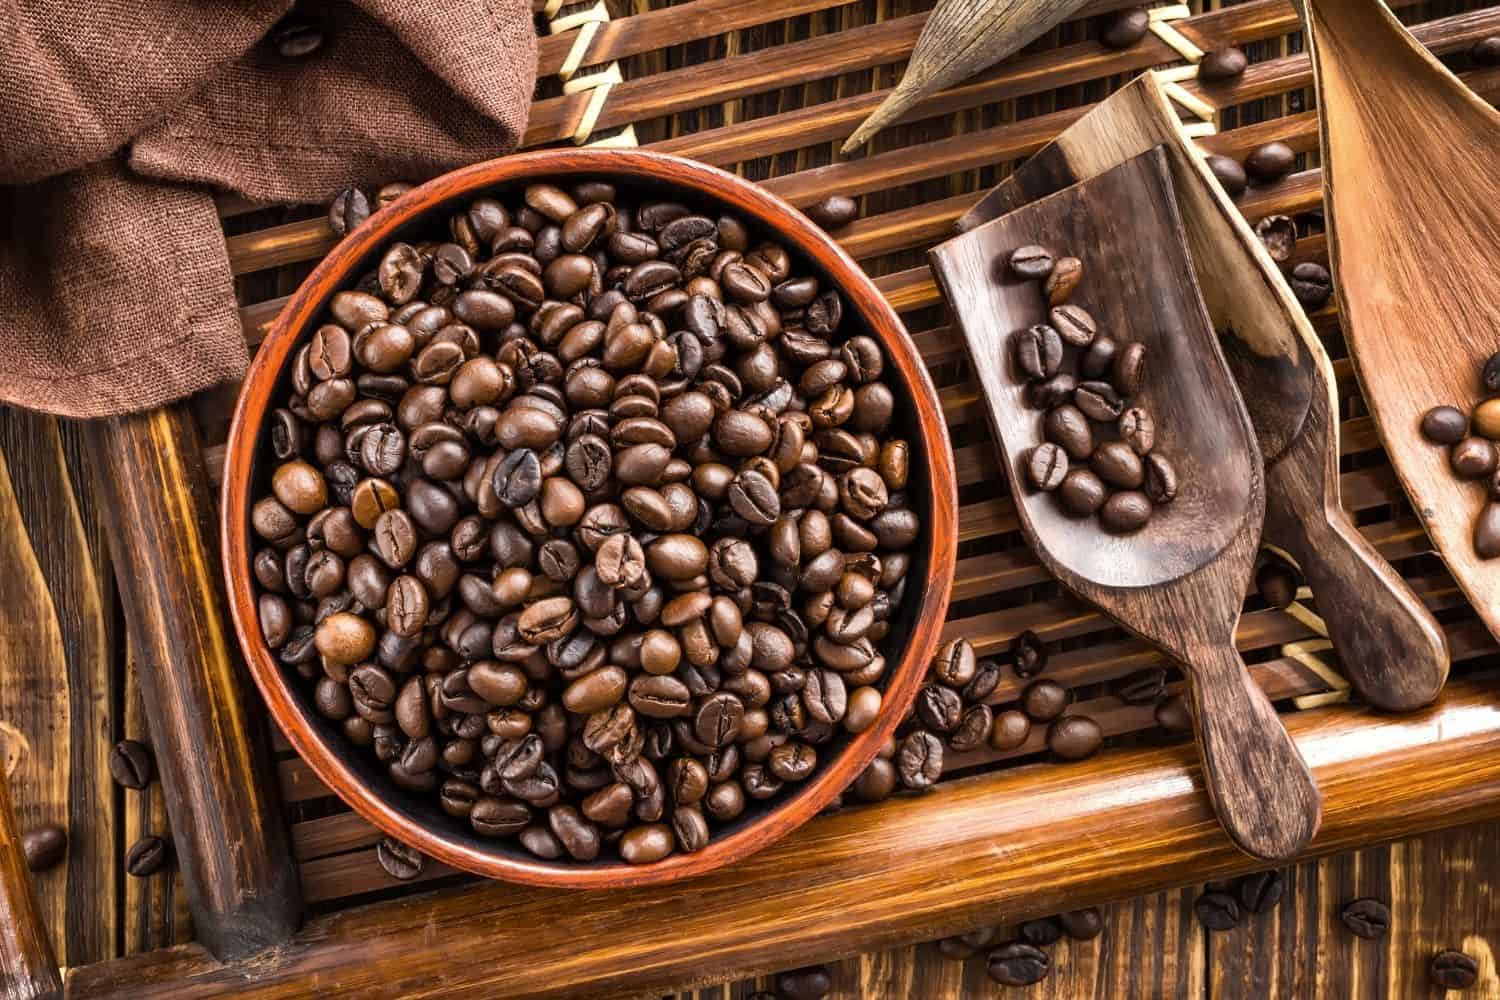 caffeine in a coffee bean